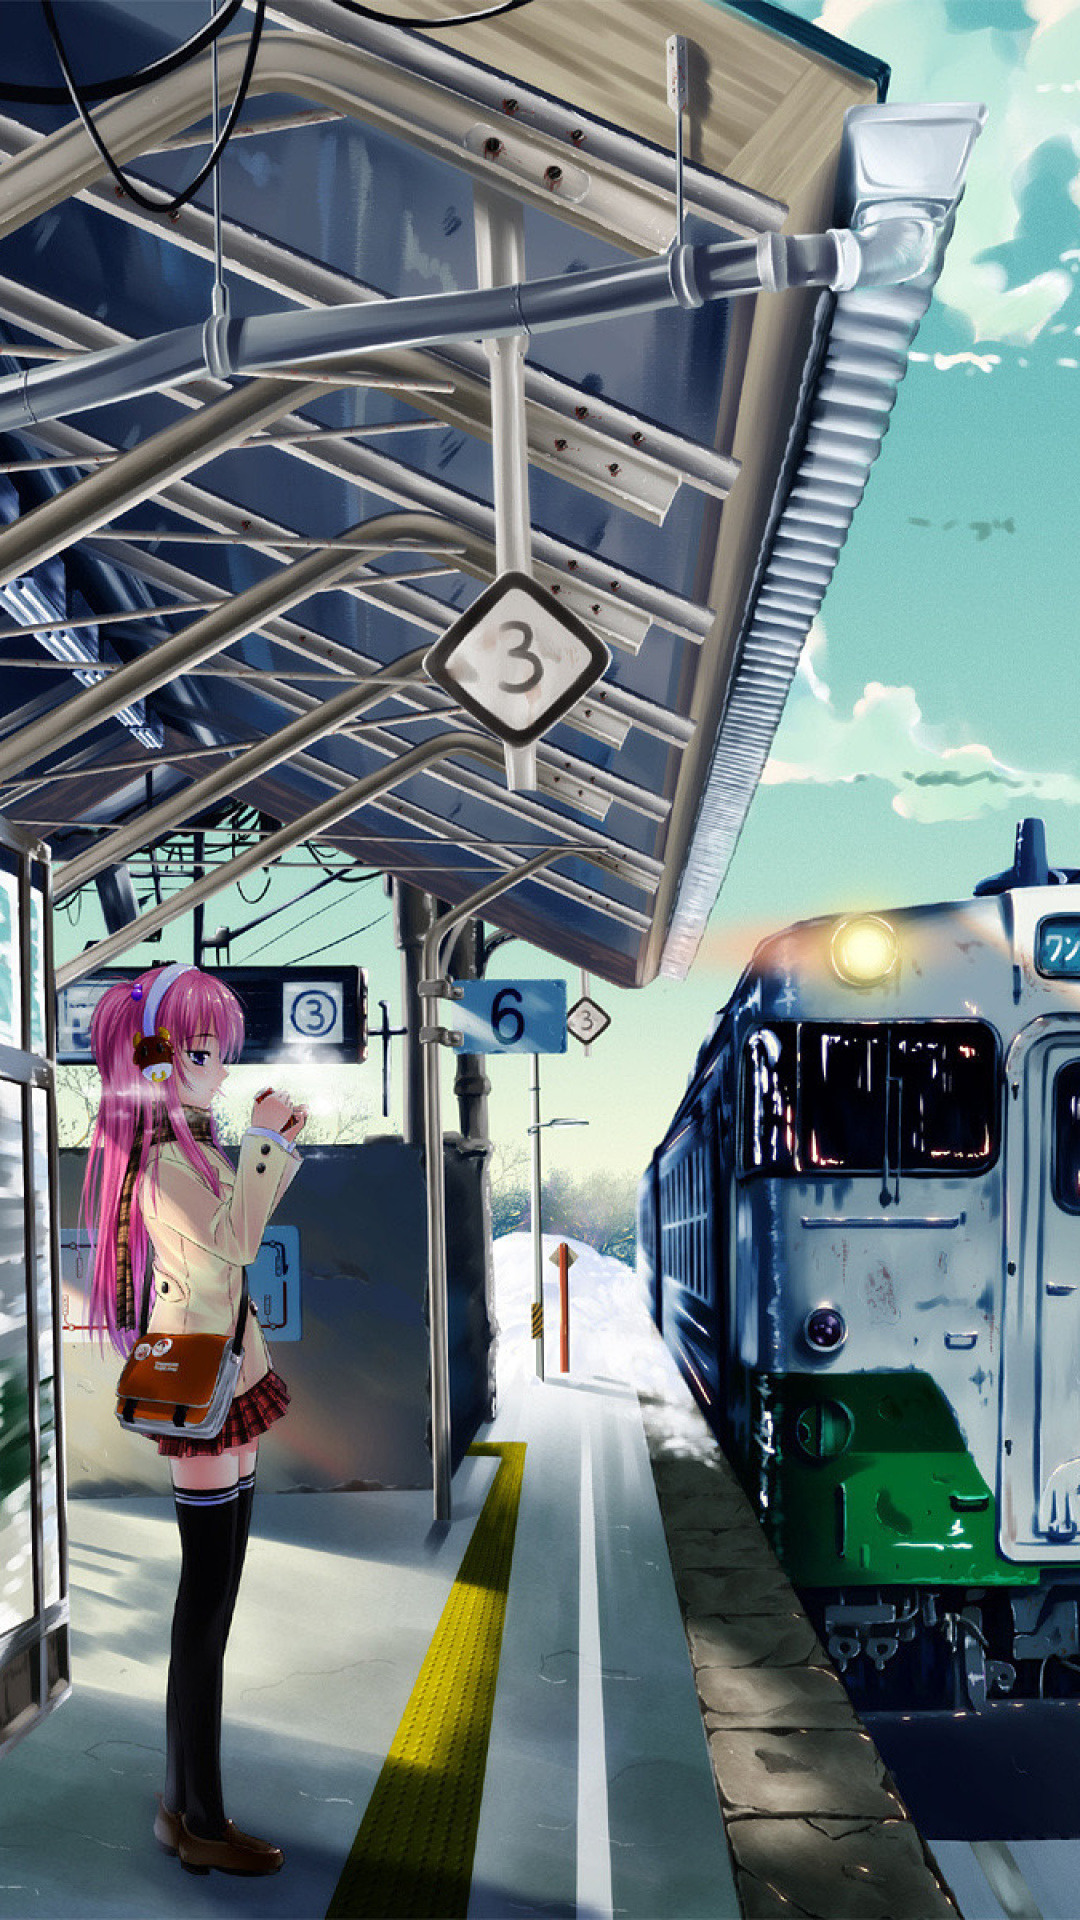 Обои Anime Girl on Snow Train Stations 1080x1920